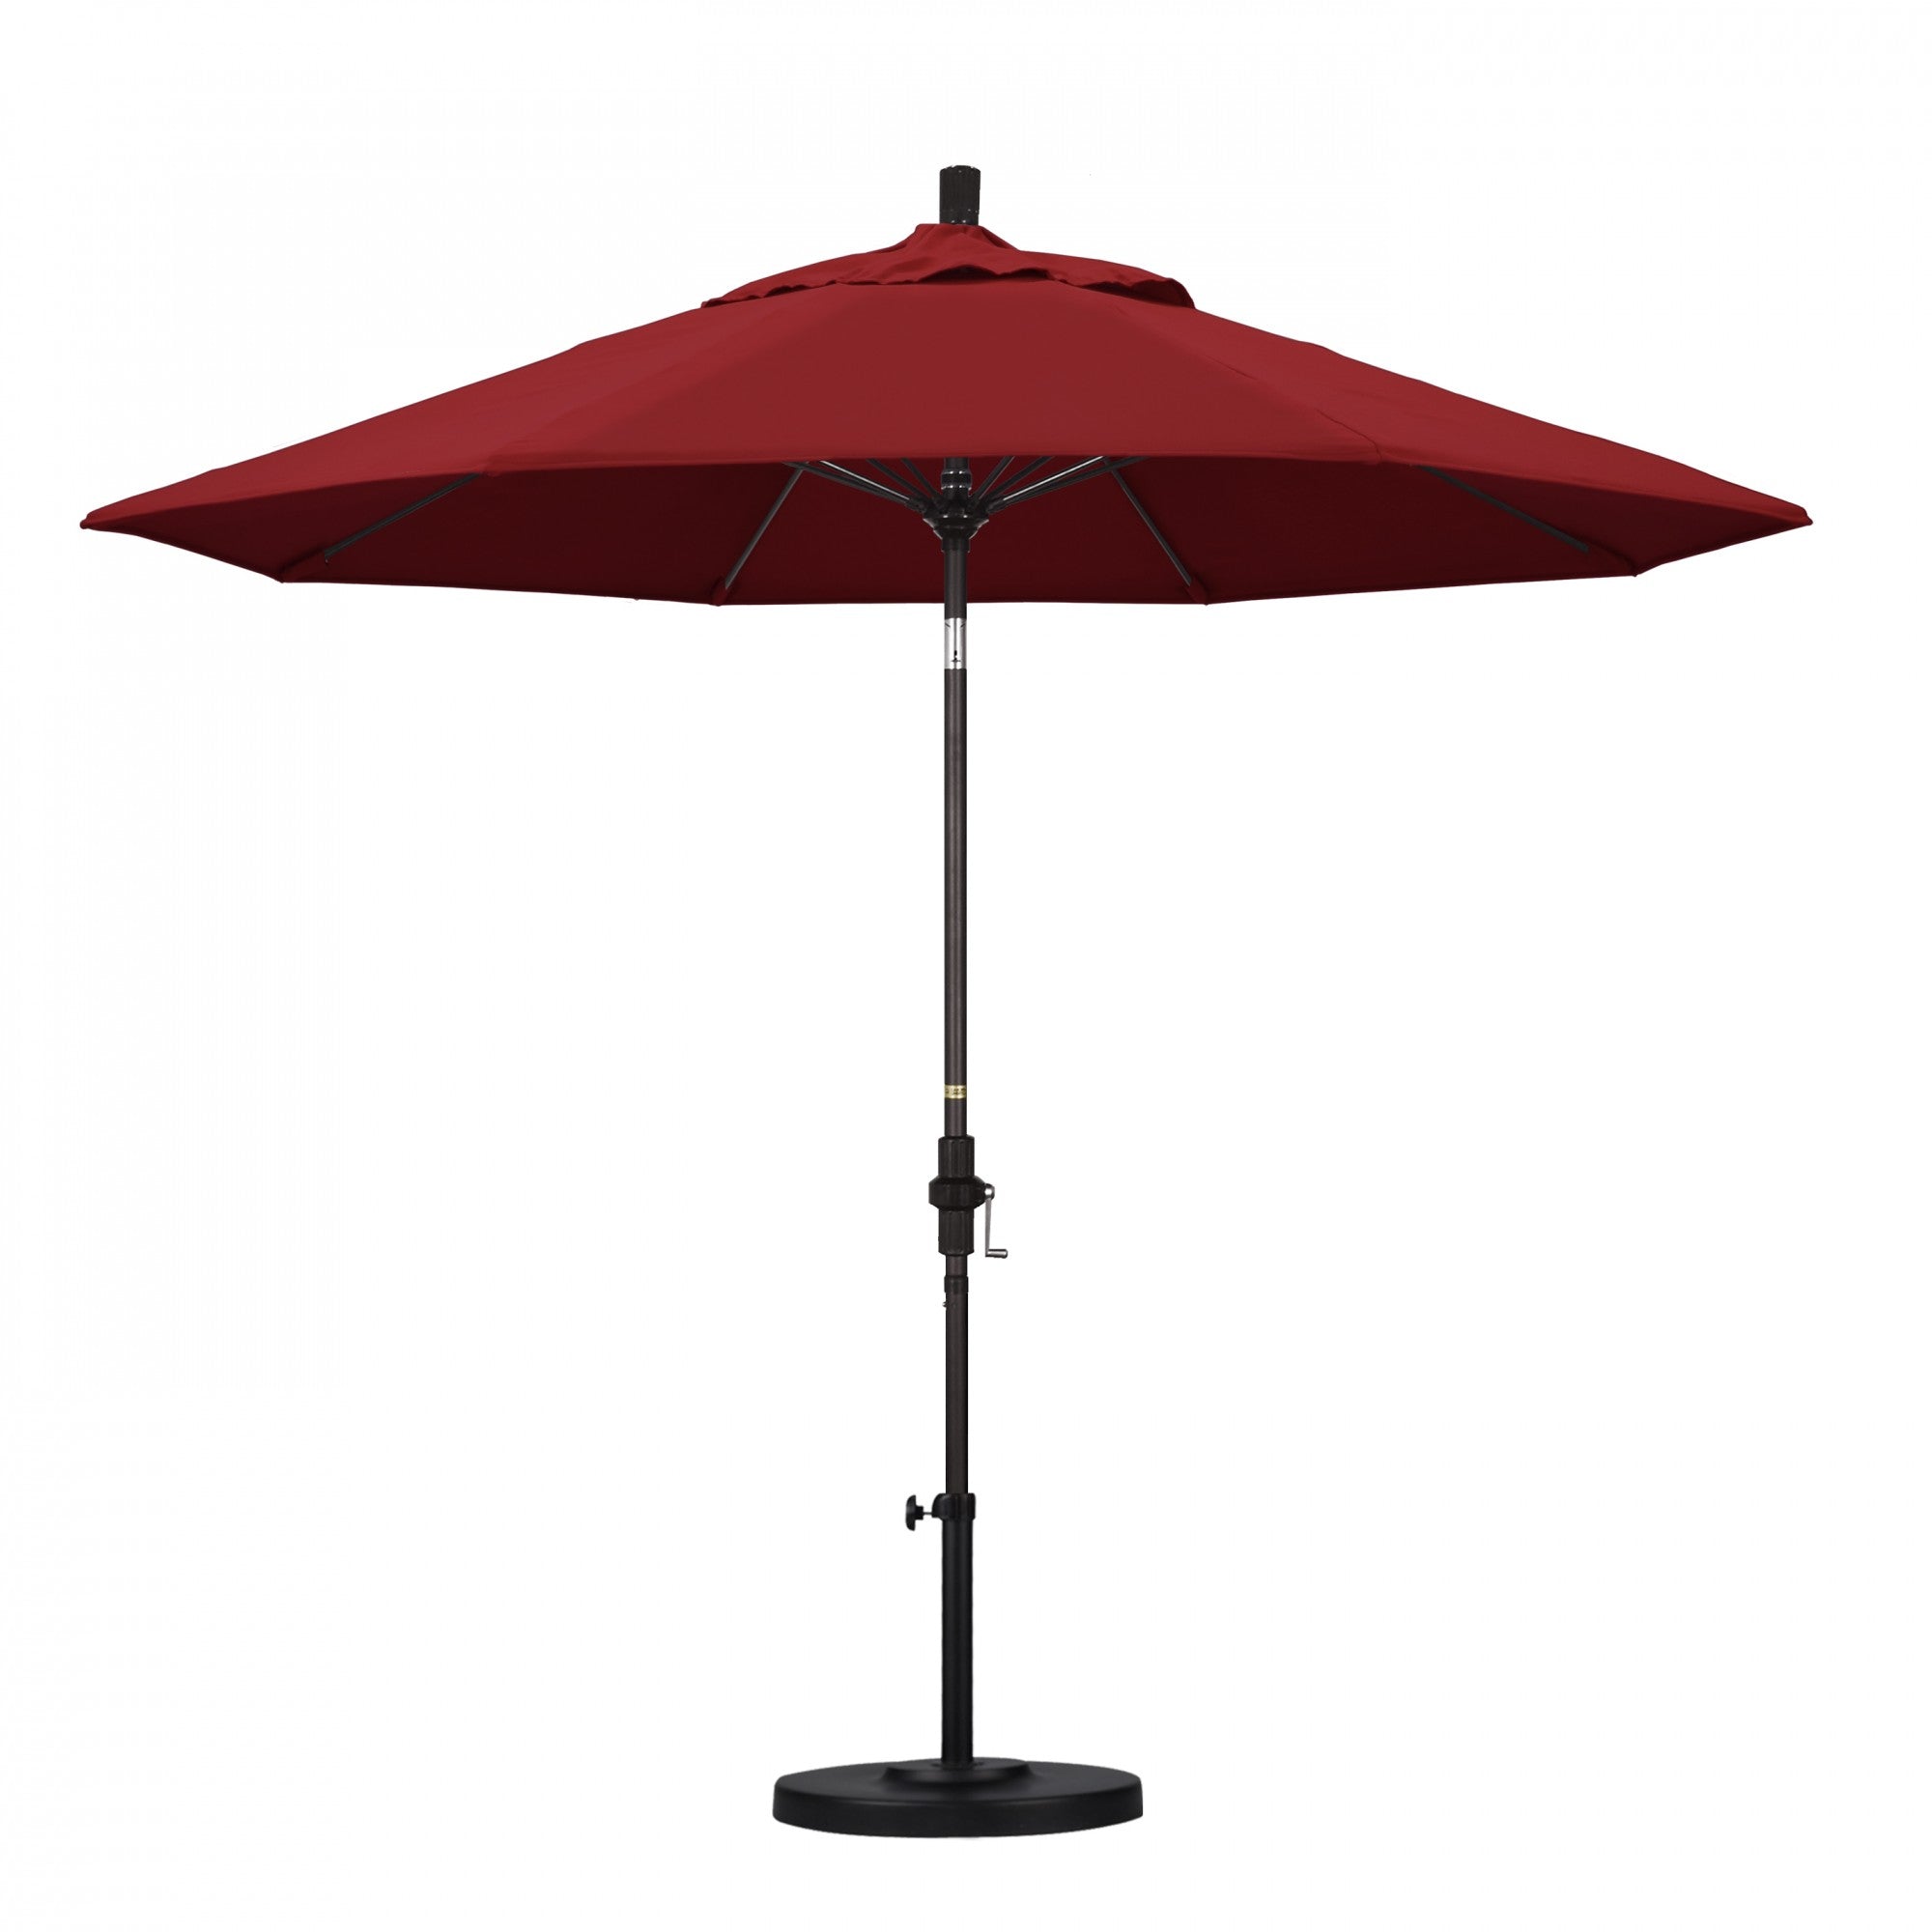 California Umbrella - 9' - Patio Umbrella Umbrella - Aluminum Pole - Red - Olefin - GSCUF908117-F13